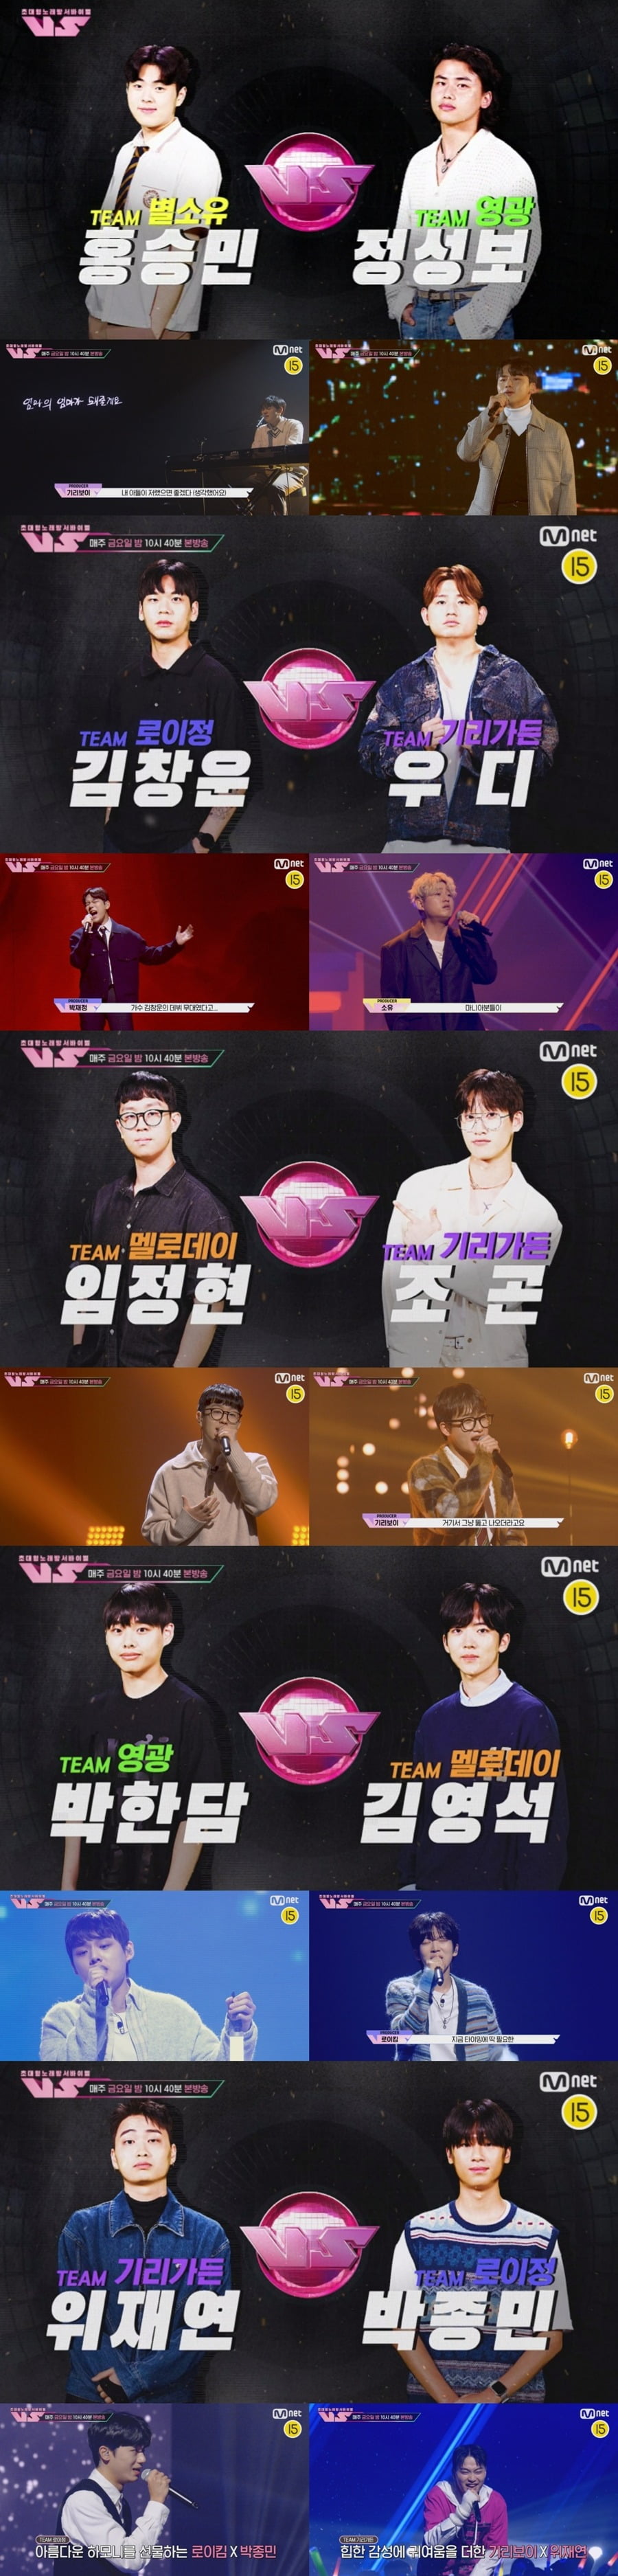 사진 제공= Mnet 초대형 노래방 서바이벌 (브이에스)